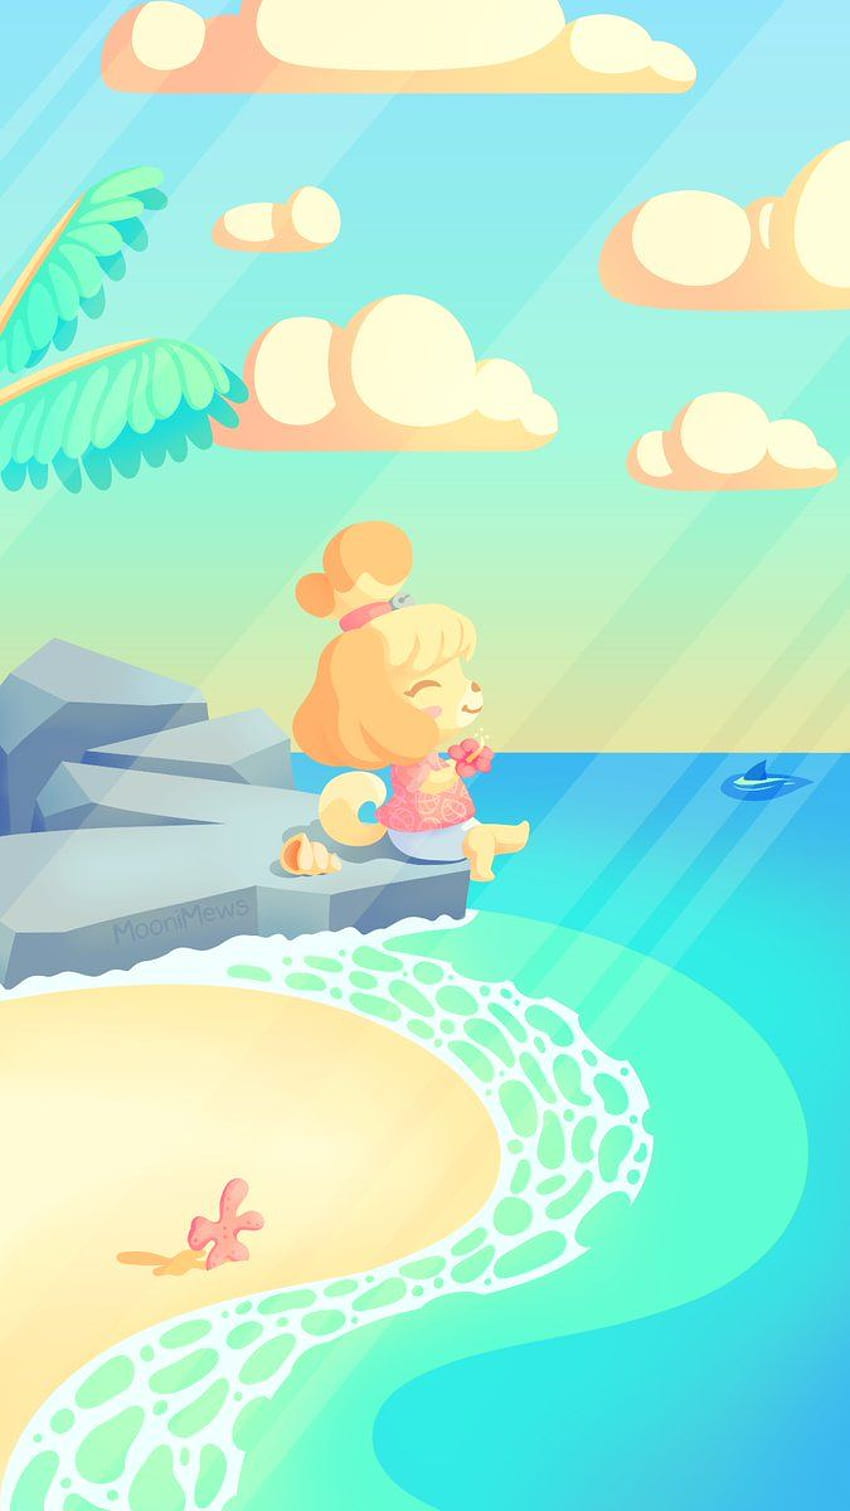 MooniMews. bIm - Un telefono di Animal Crossing New Horizons che ho creato per dare a Isabelle un momento per rilassarsi prima che il gioco sia qui :) Sfondo del telefono HD